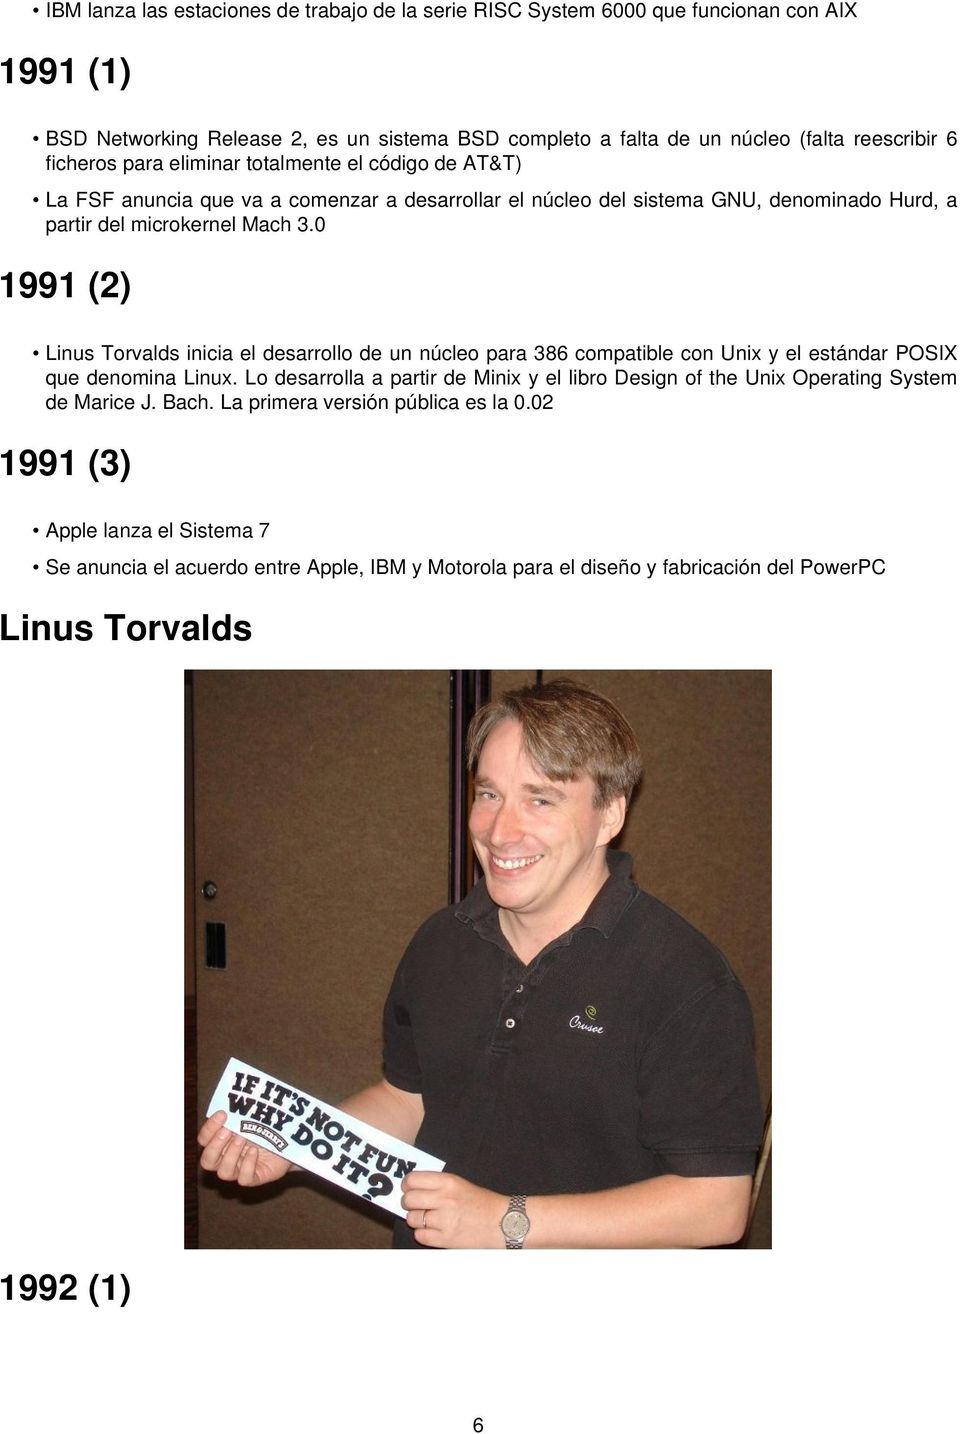 0 1991 (2) Linus Torvalds inicia el desarrollo de un núcleo para 386 compatible con Unix y el estándar POSIX que denomina Linux.